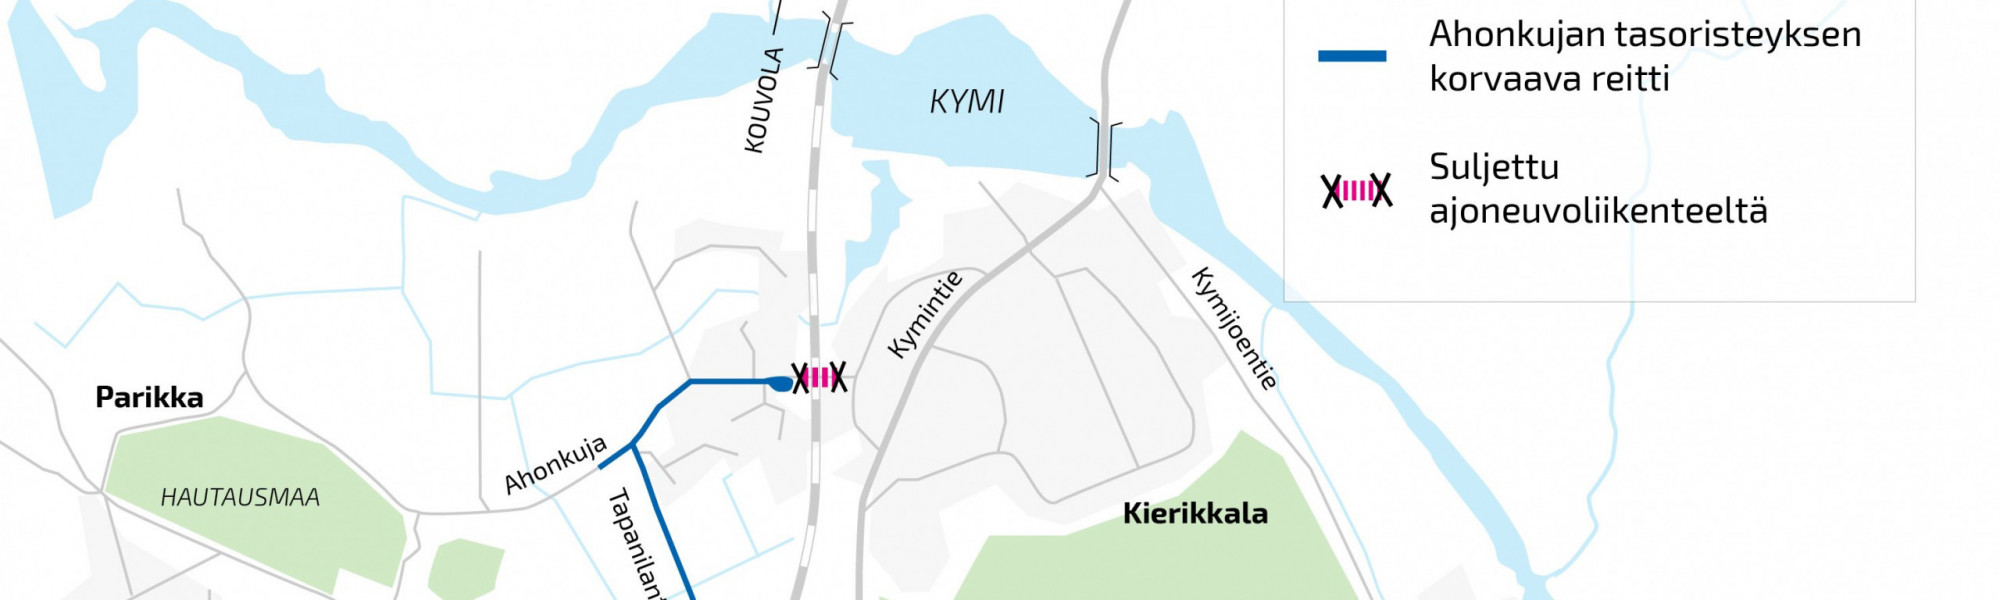 Karttakuva Ahonkujan tasoristeyksen korvaavasta reitistä